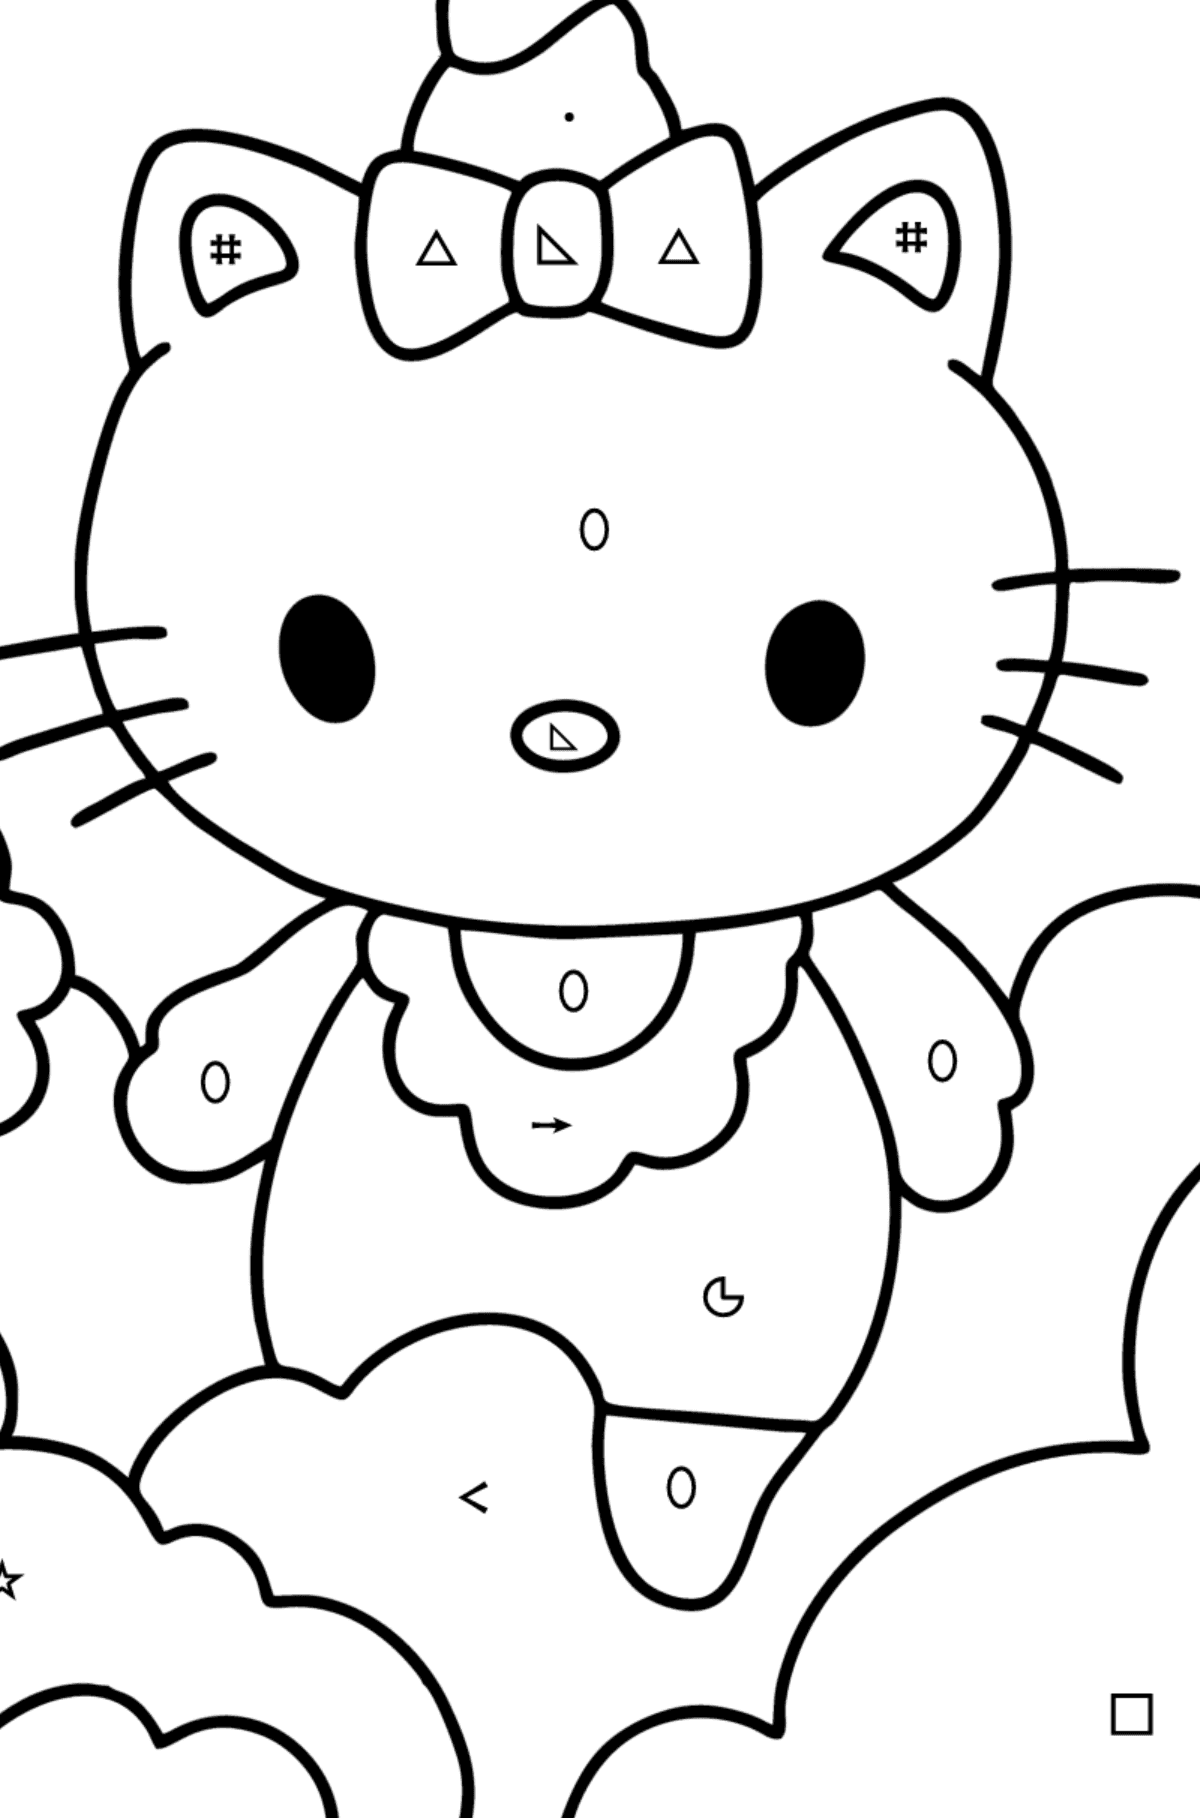 Boyama sayfası Hello Kitty tek boynuzlu at - Sembollere ve Geometrik Şekillerle Boyama çocuklar için